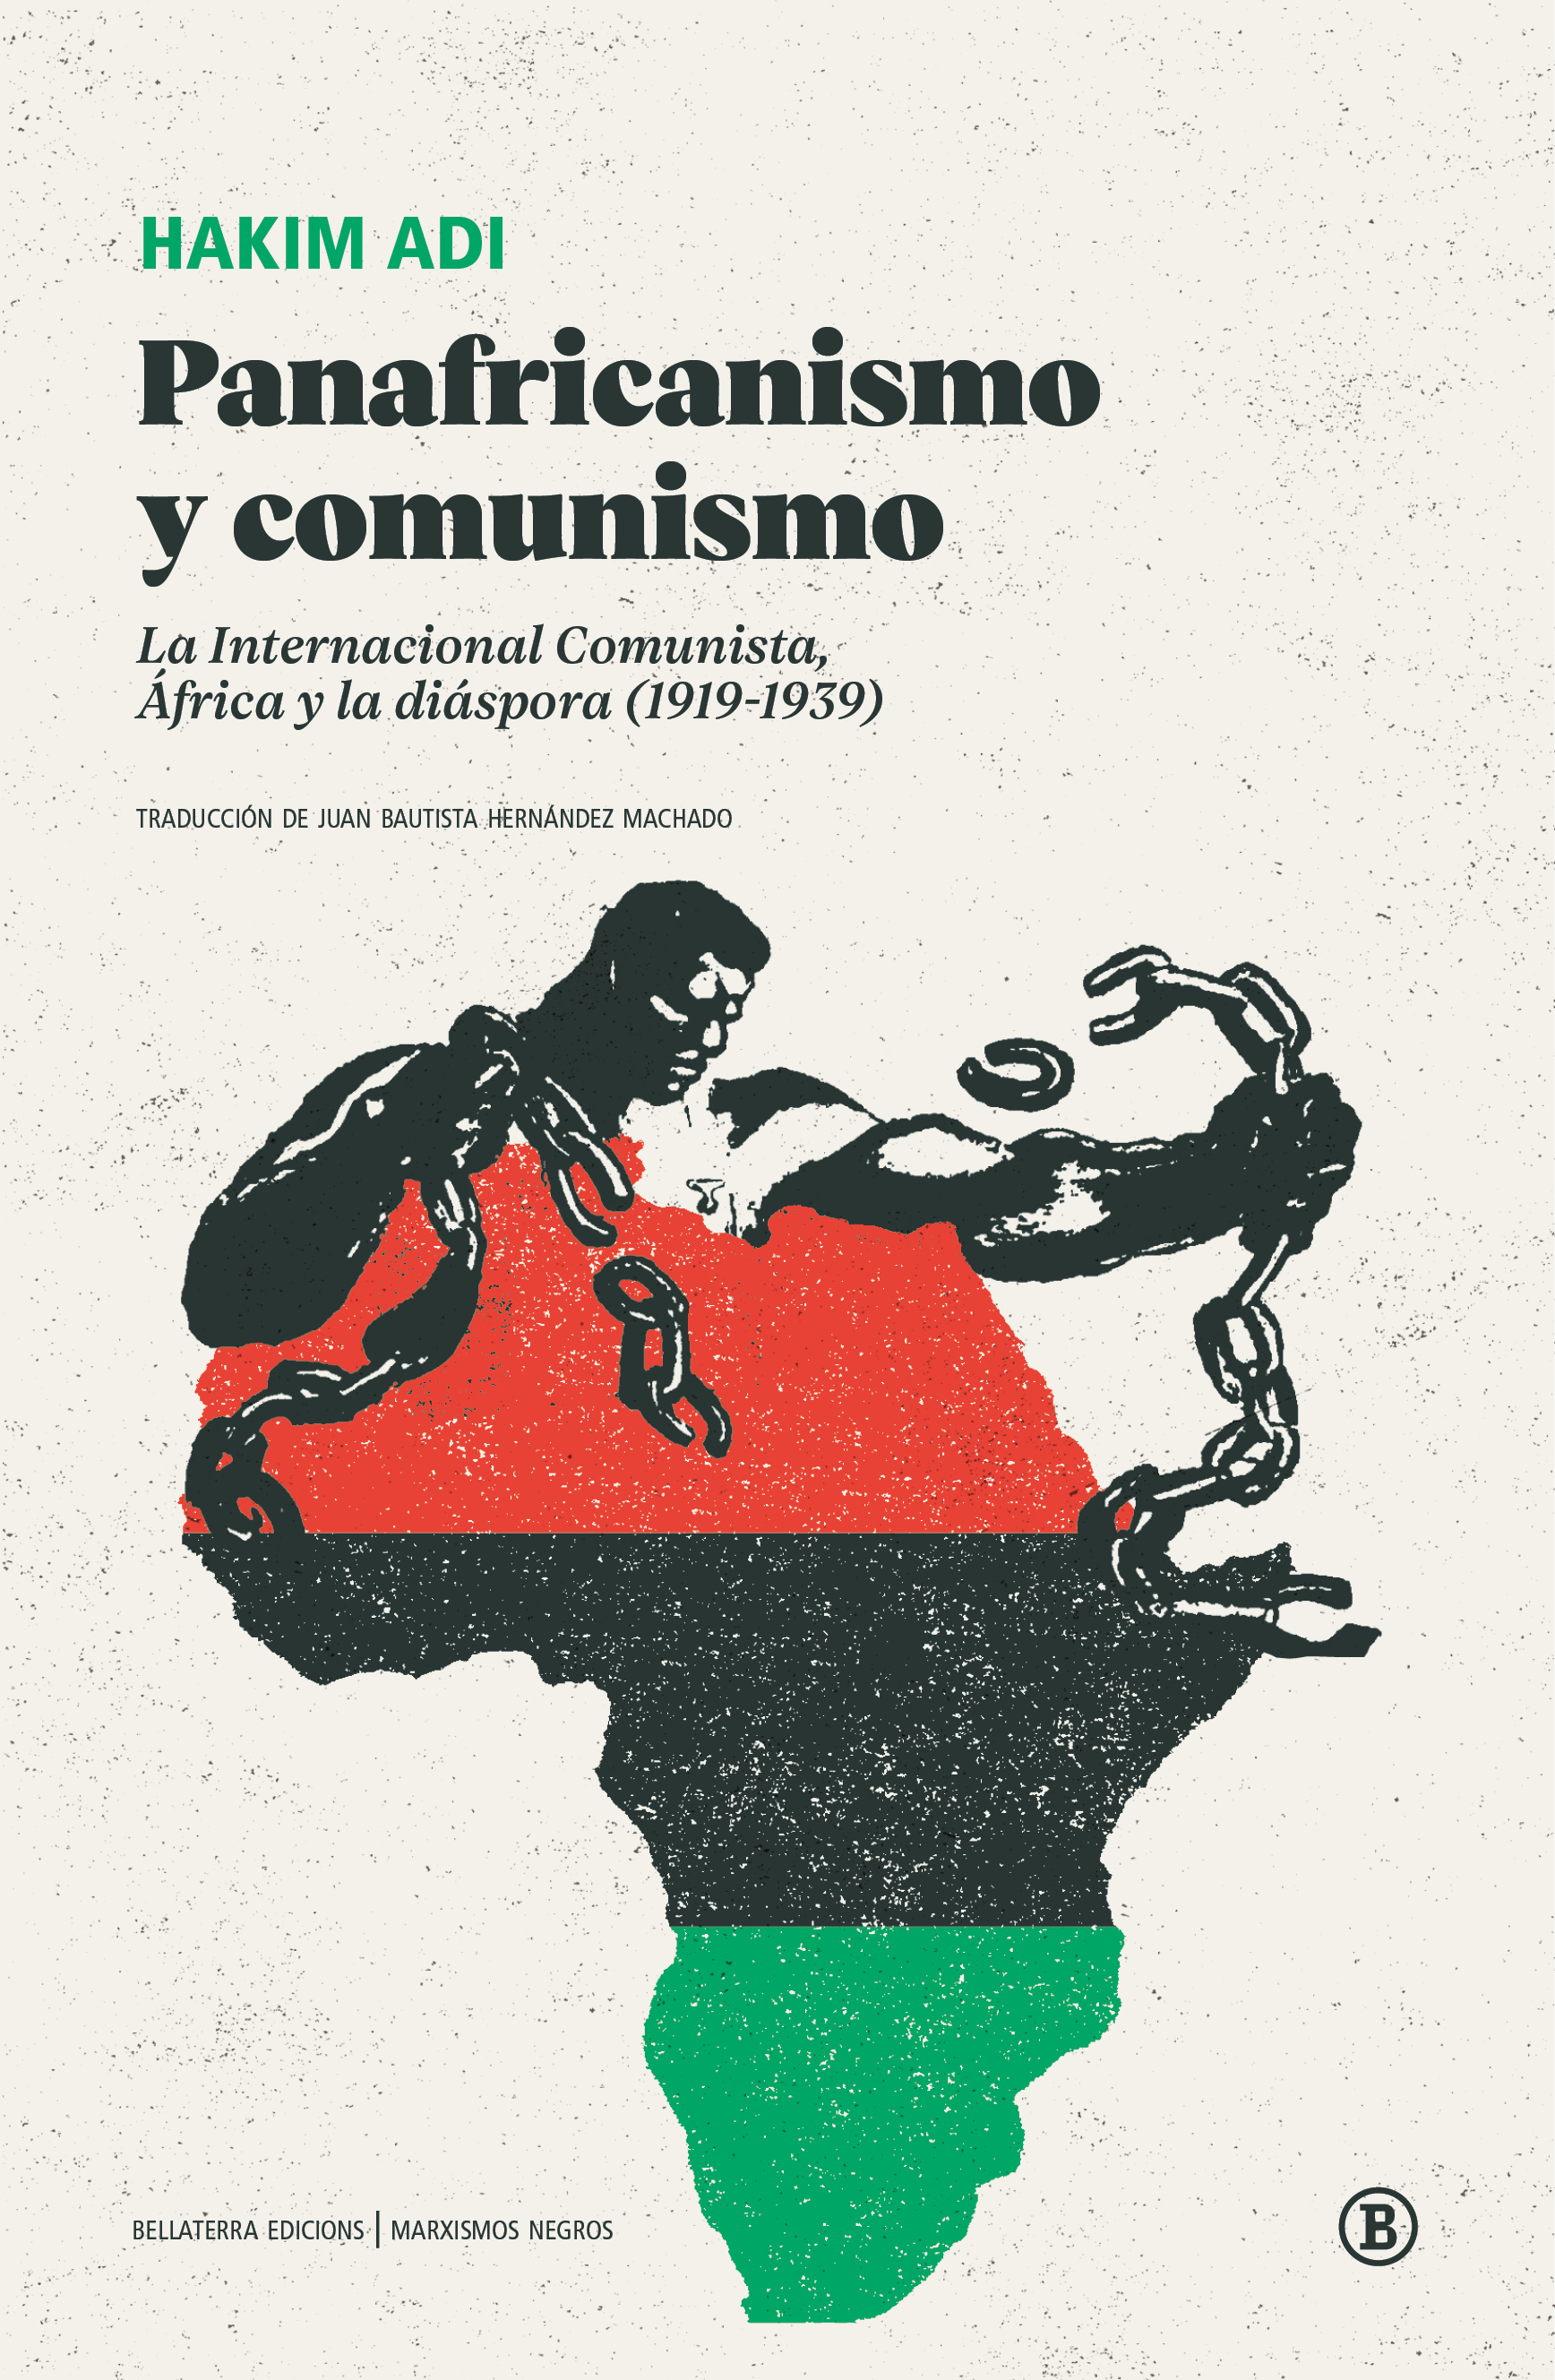 Panafricanismo y comunismo - Hakim Adi